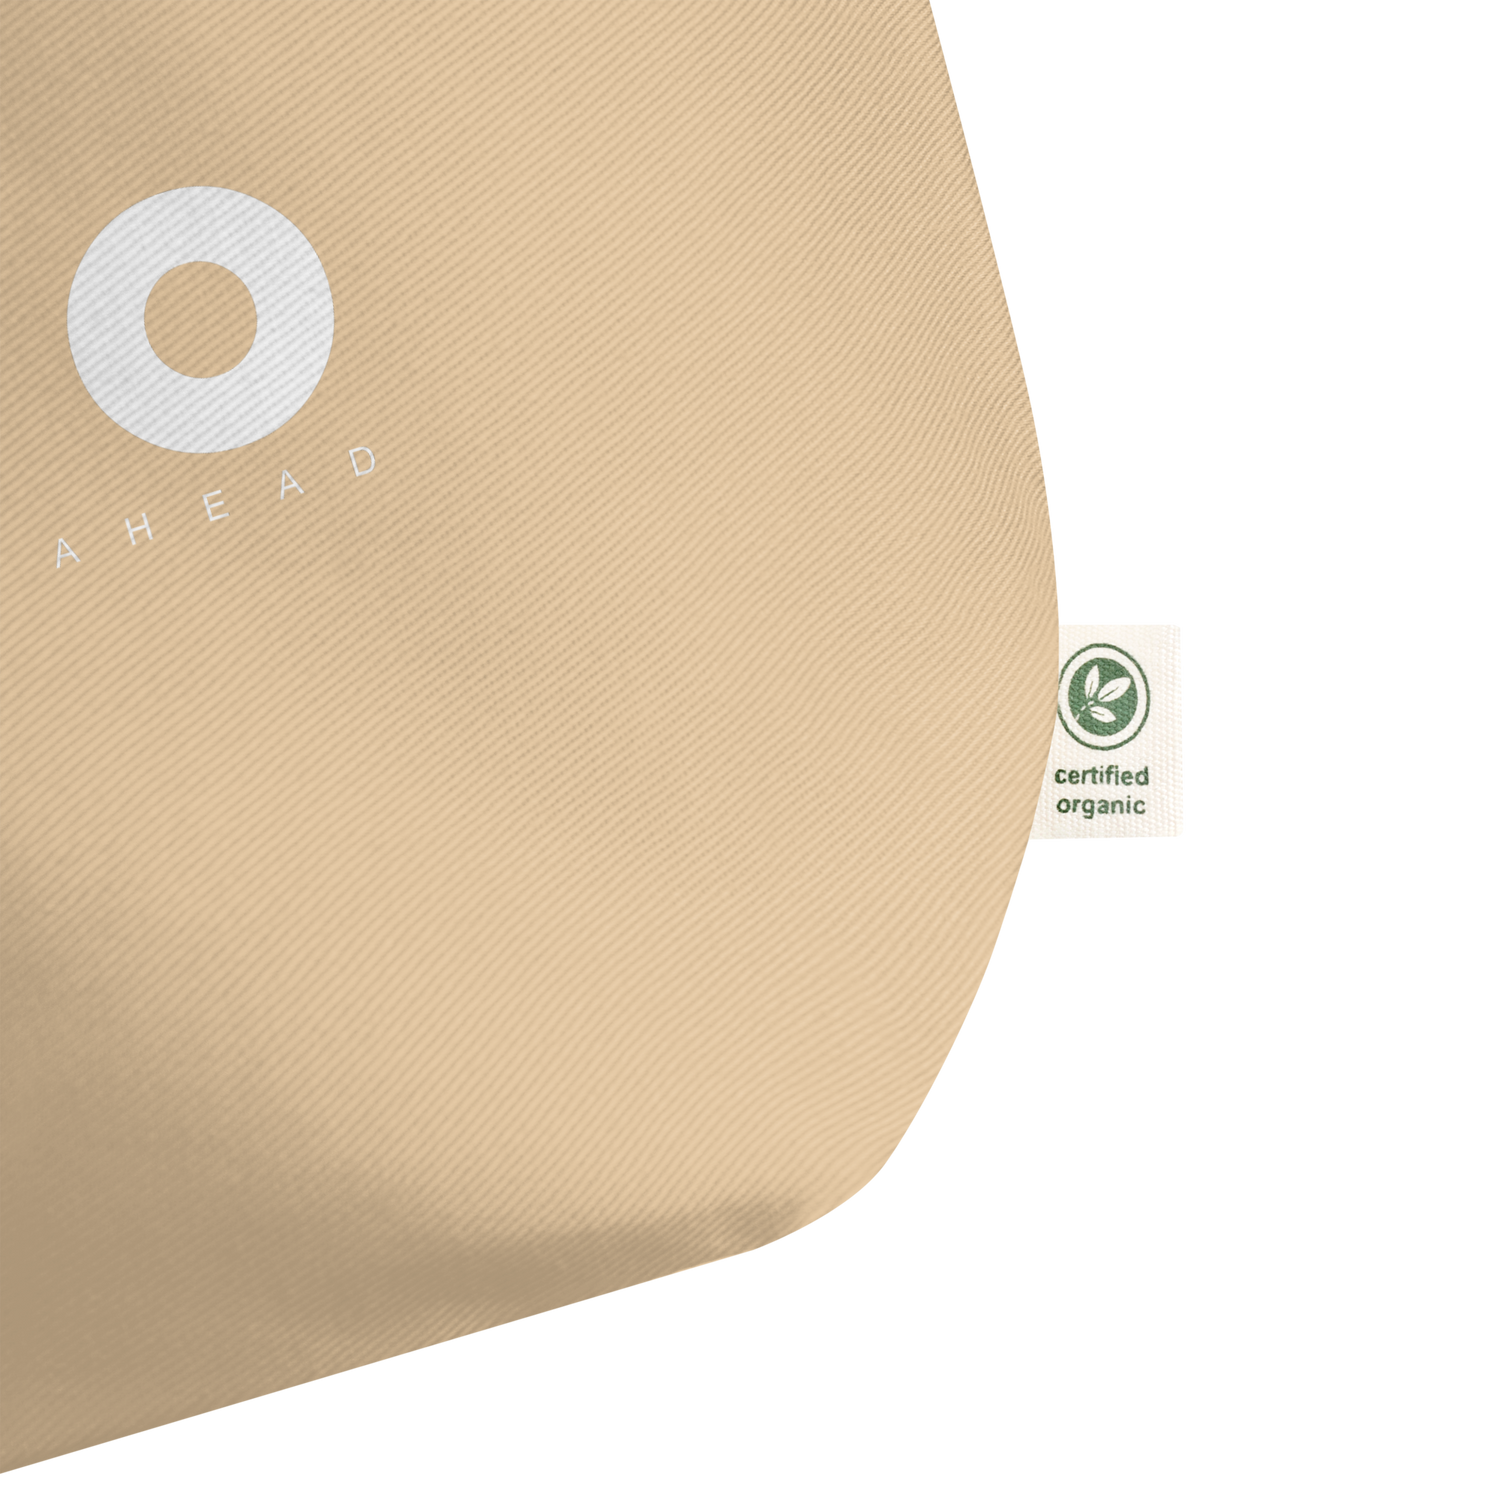 KIVO "Natural" large organic tote bag